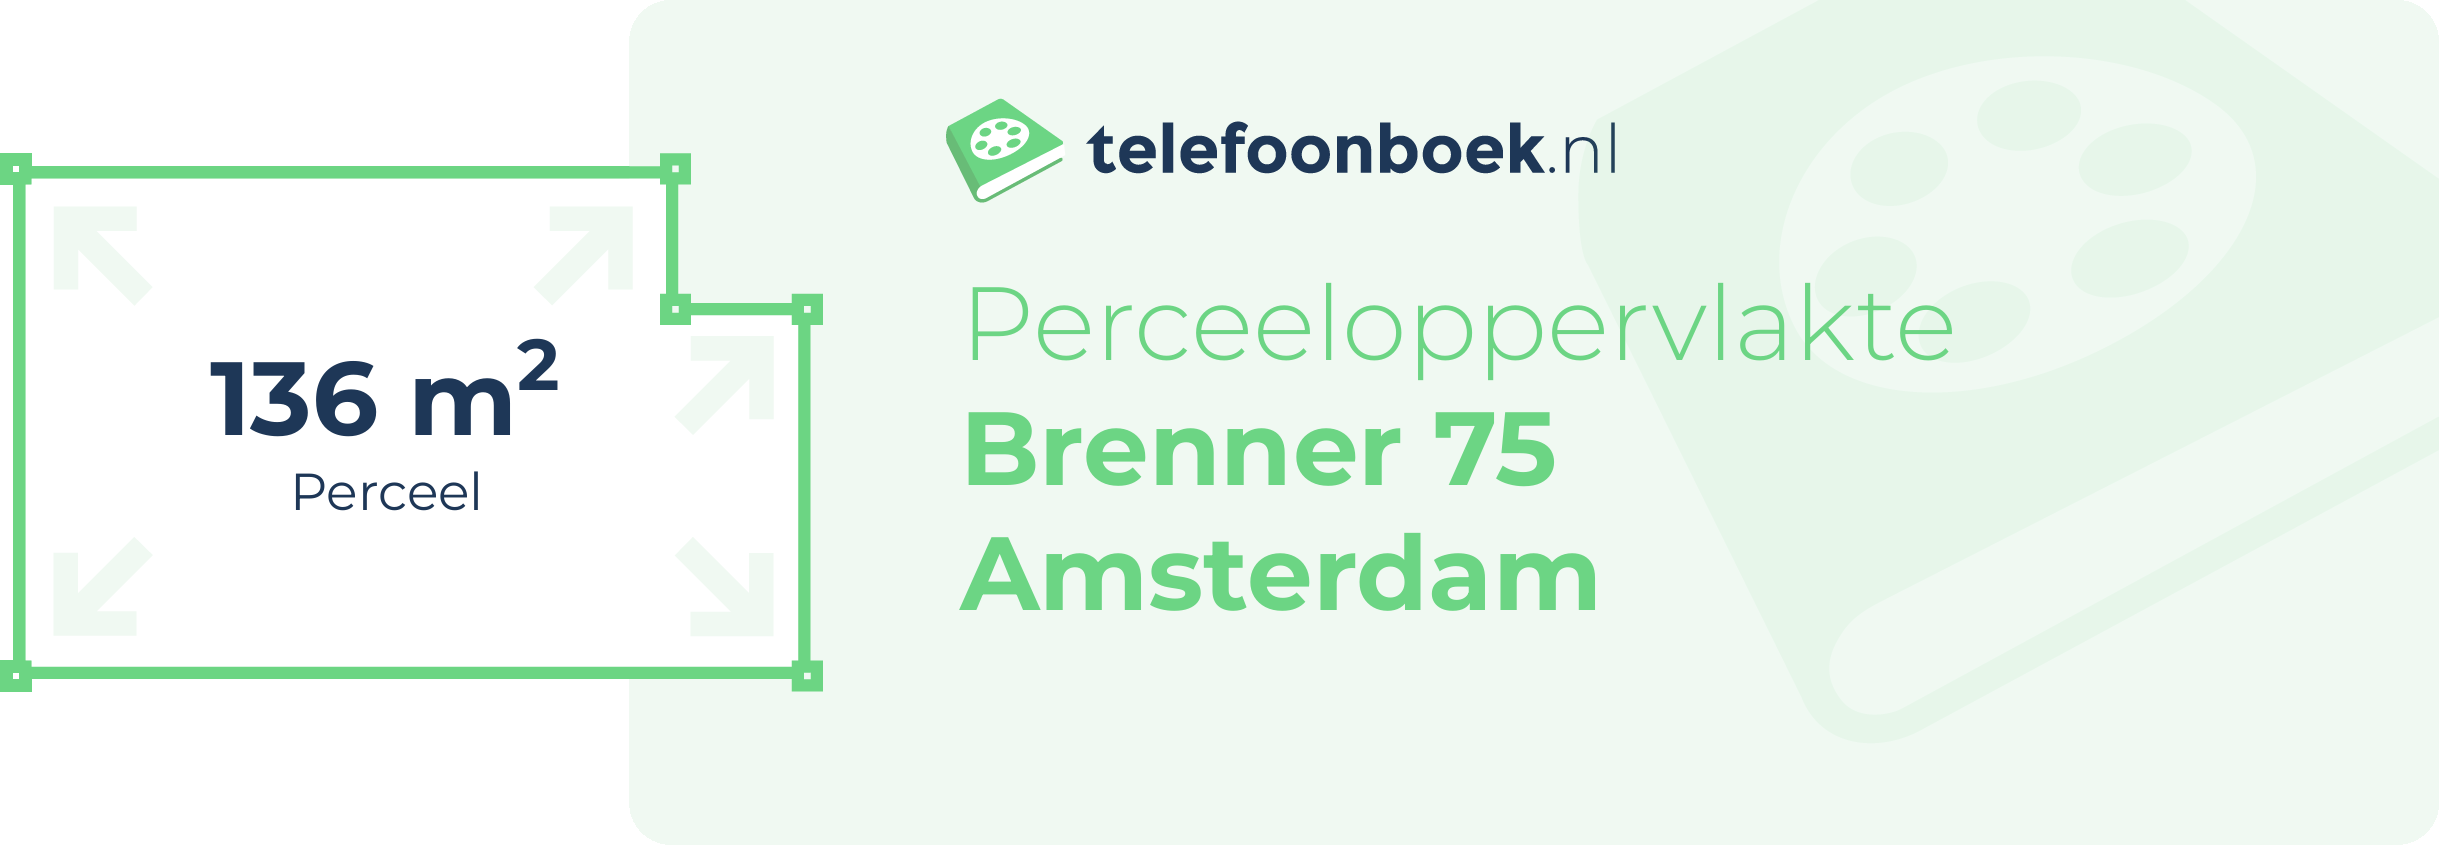 Perceeloppervlakte Brenner 75 Amsterdam